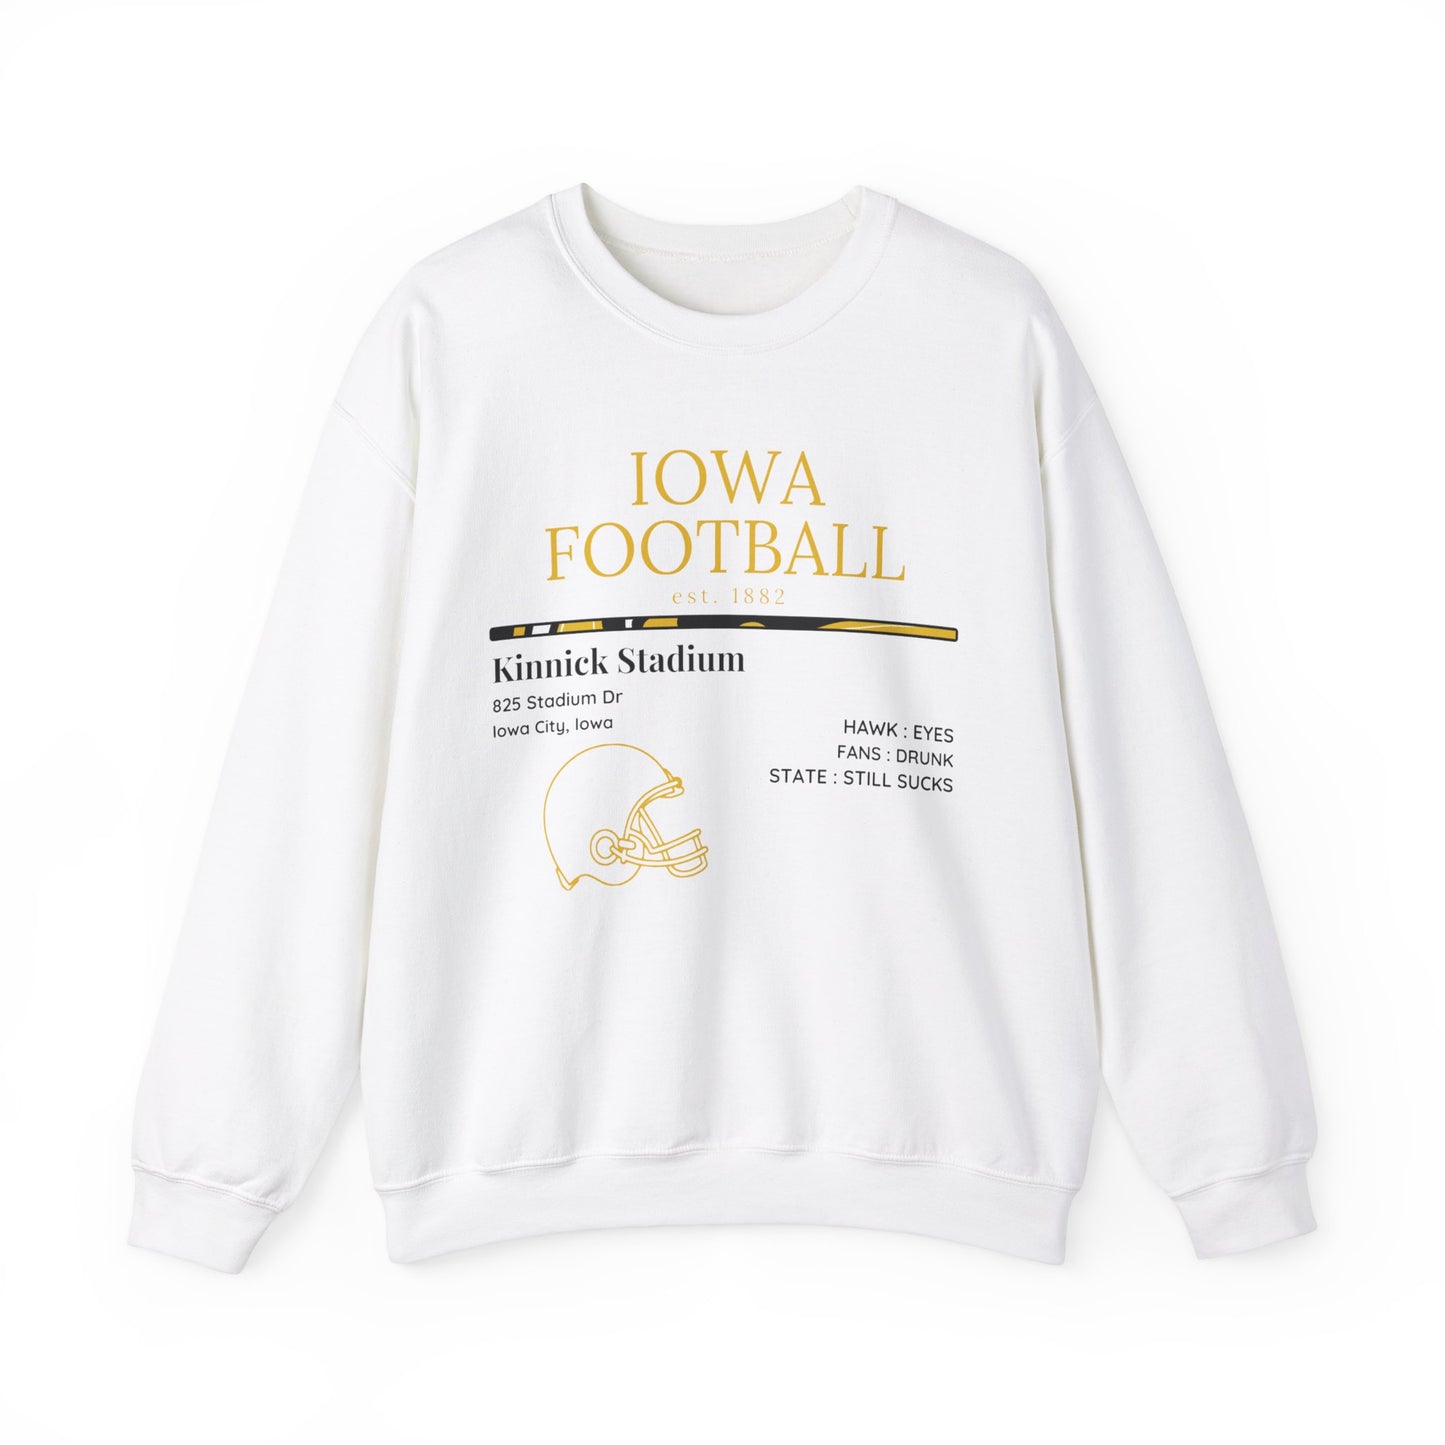 Iowa Football Sweatshirt